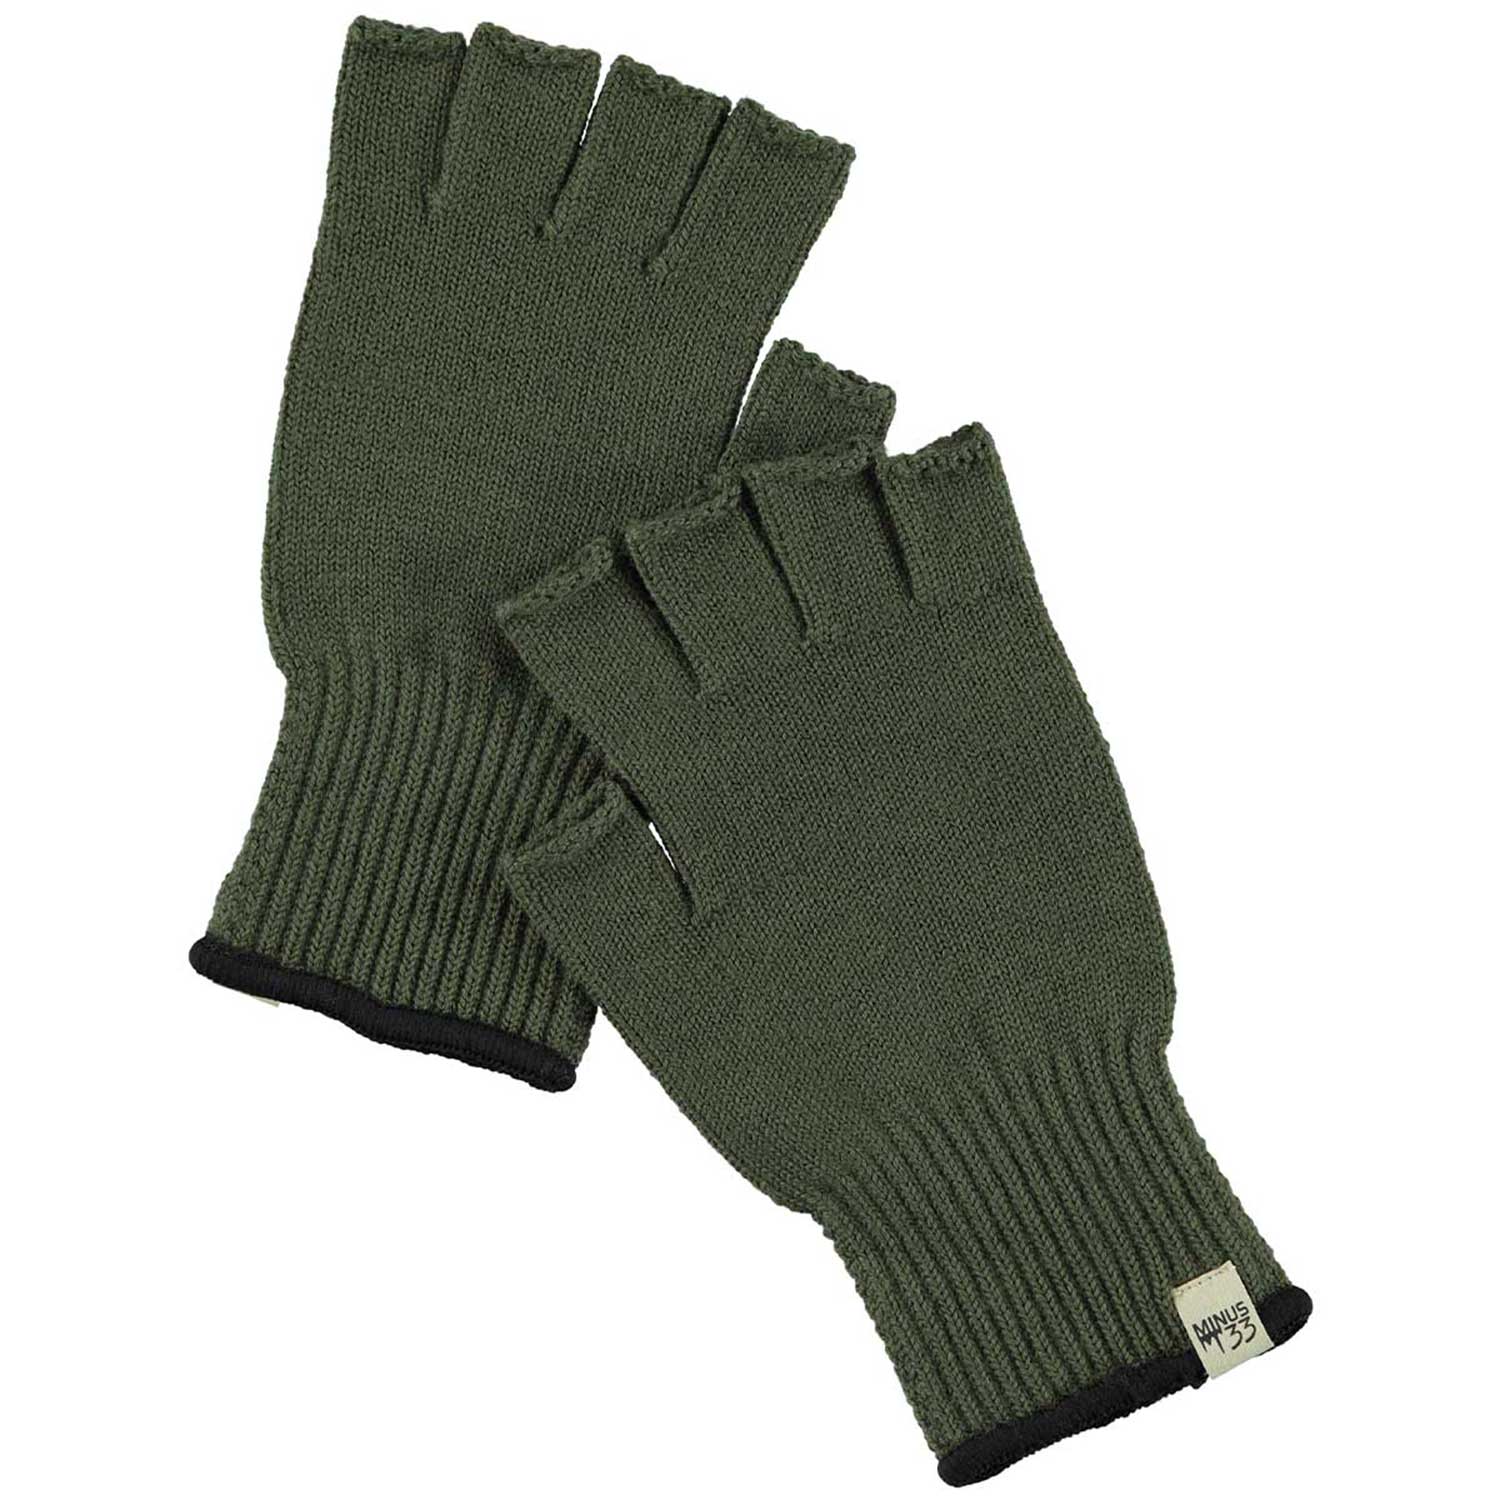 Minus33 Merino Wool Glove Liner